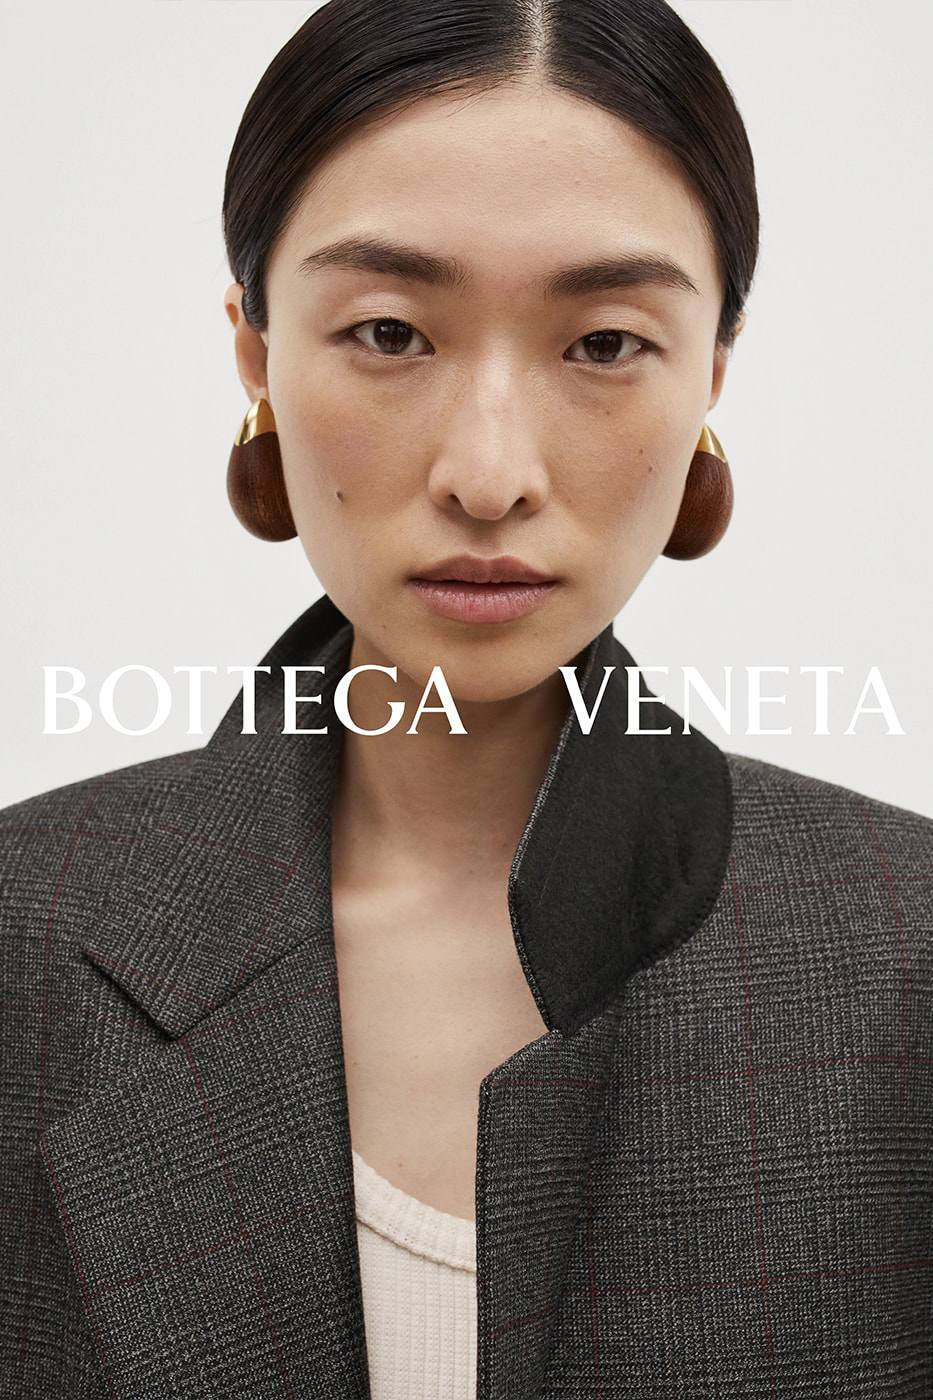 Bộ sưu tập đẹp như giấc mơ của Bottega Veneta - 14